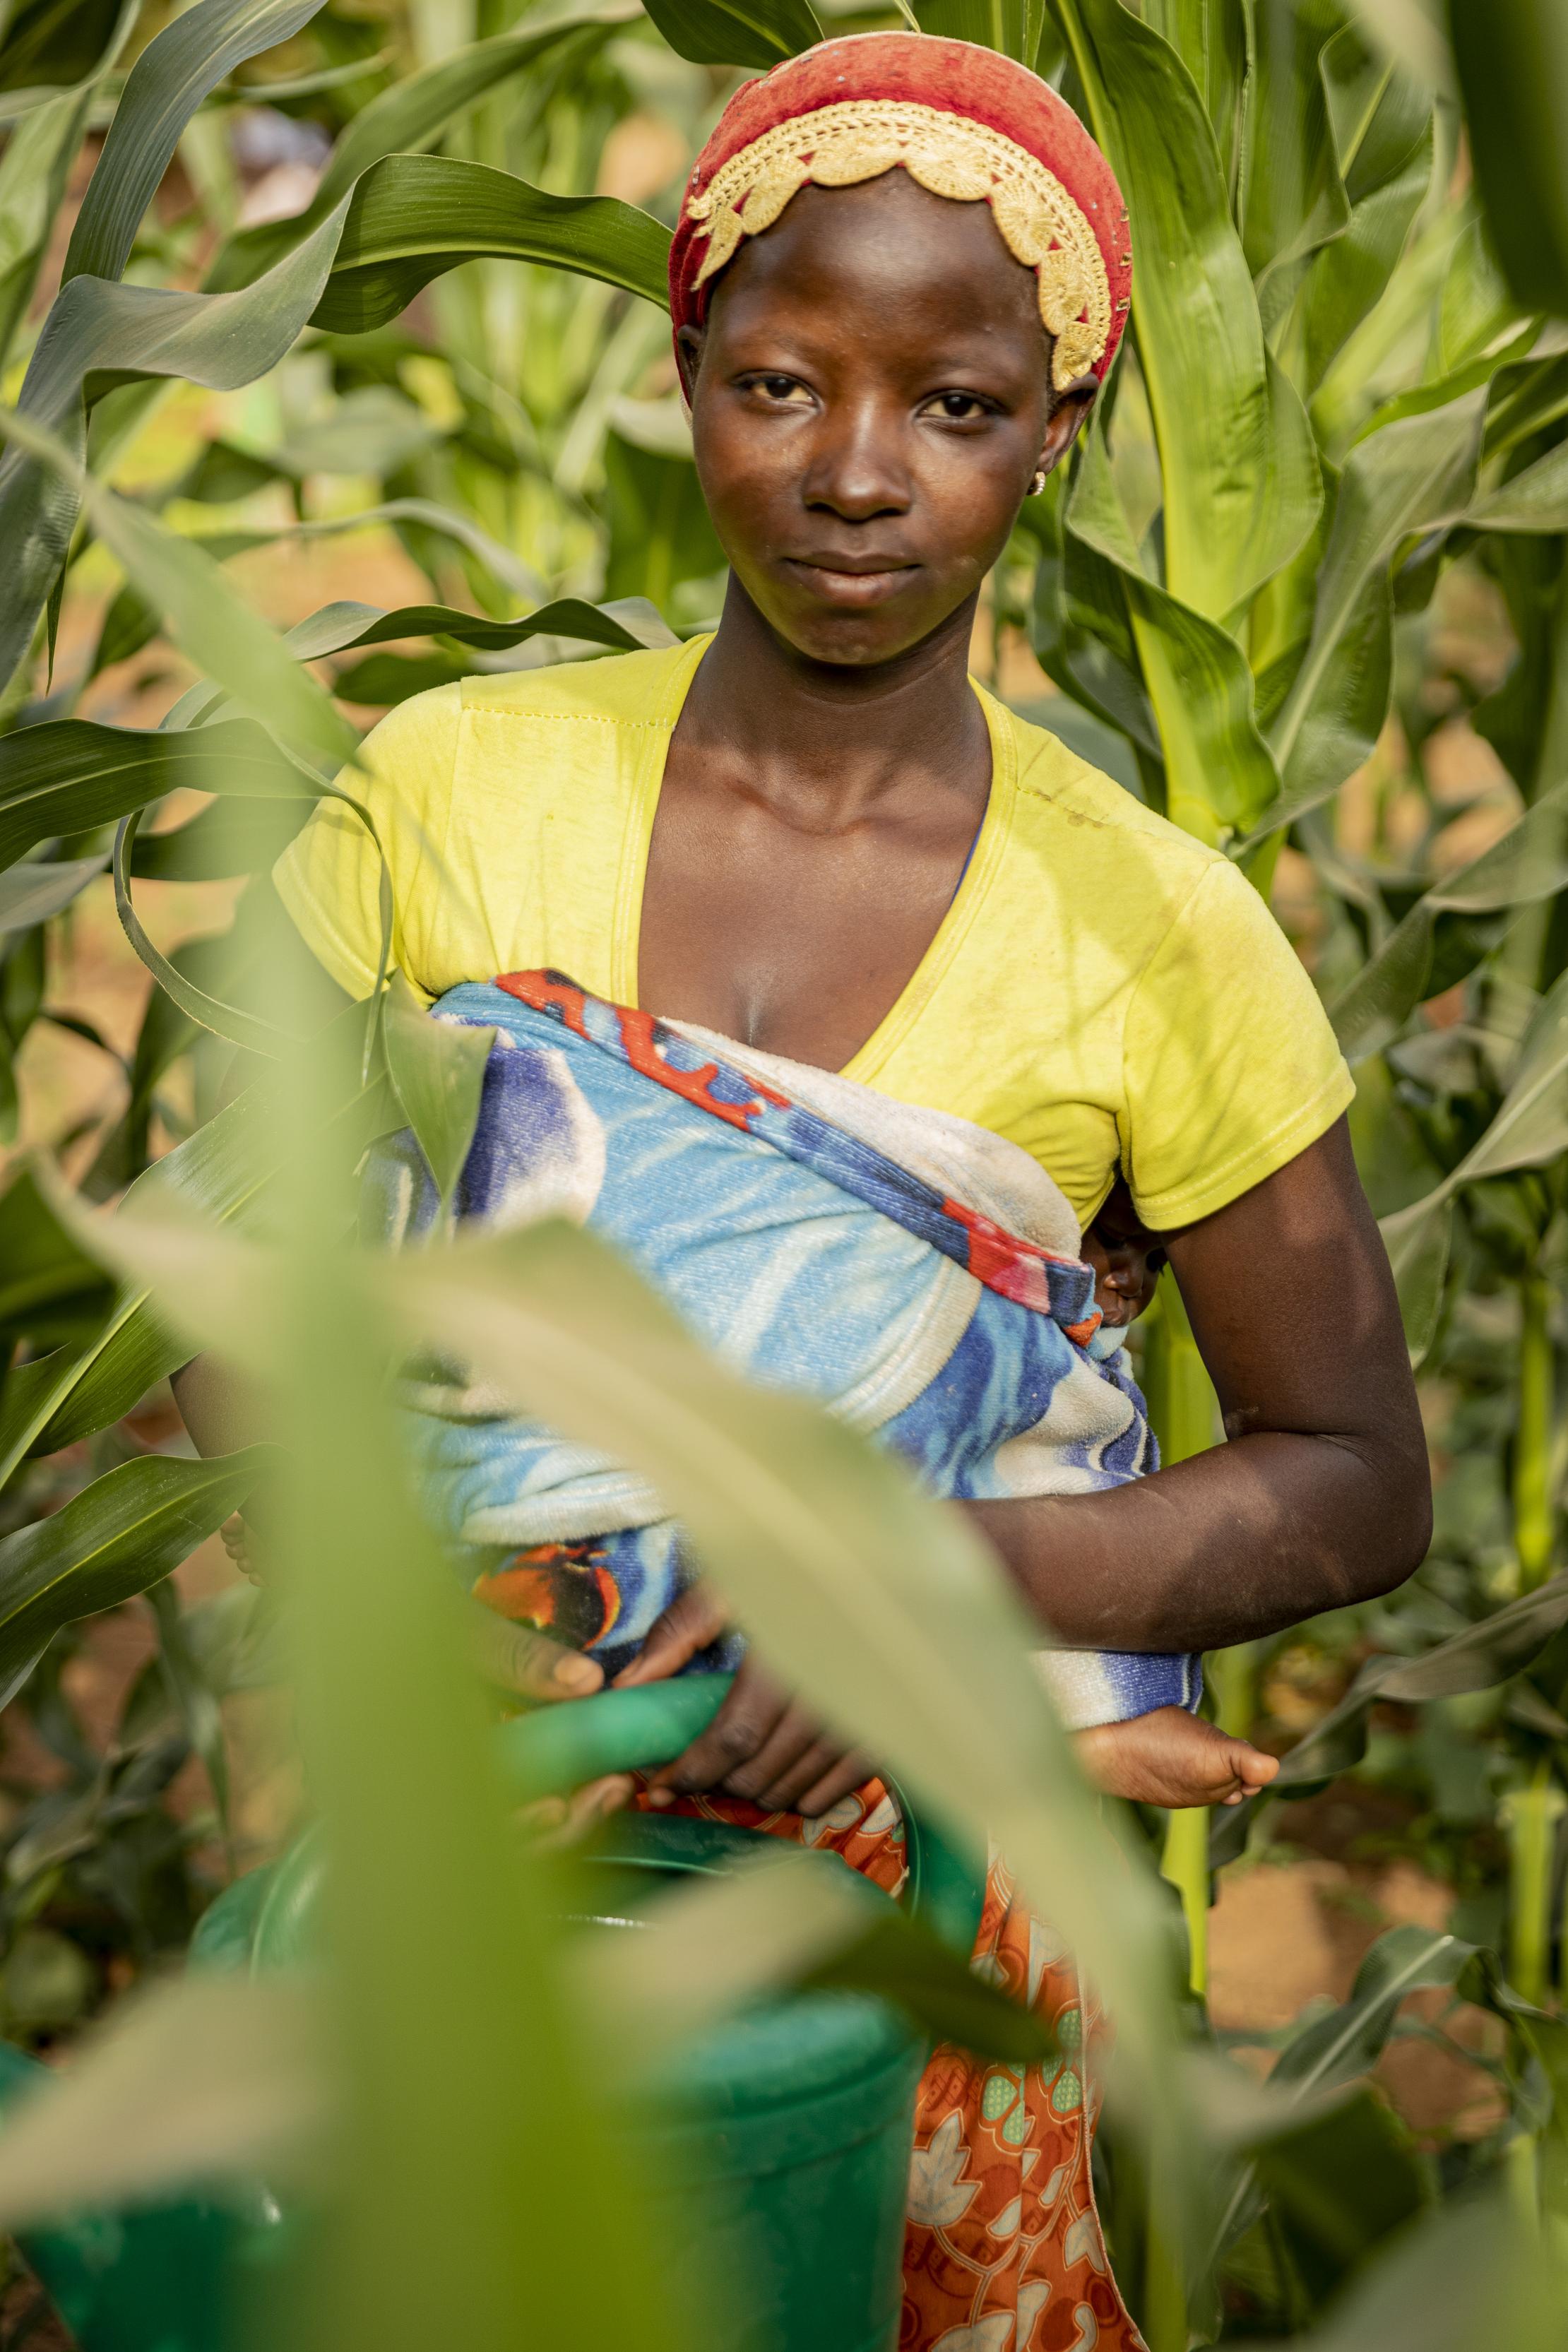 Woman farmer in Burkina Faso